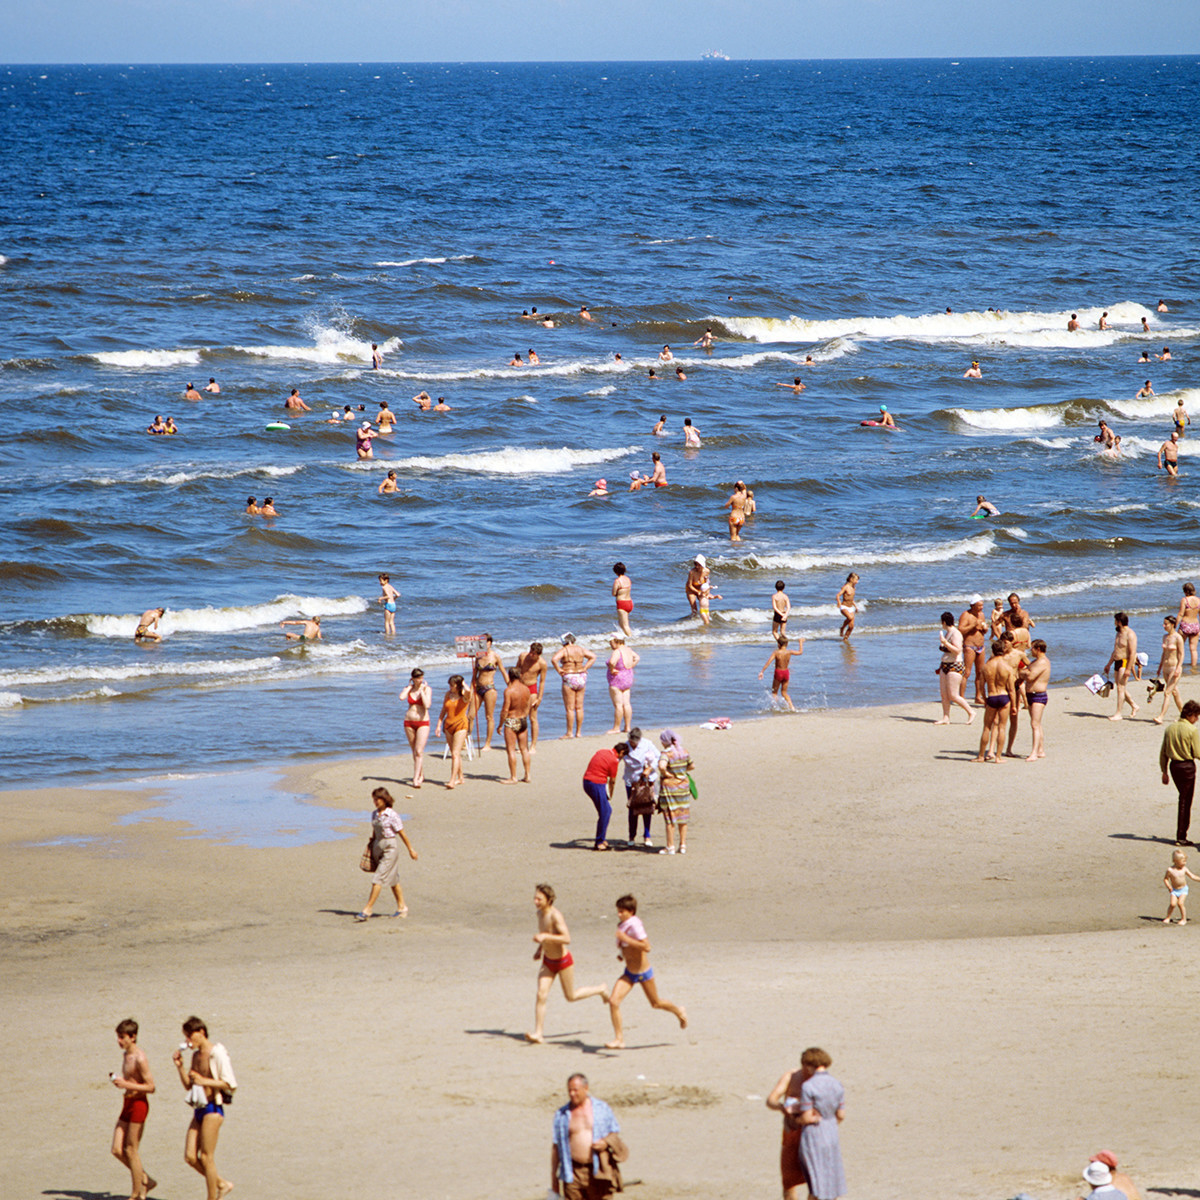 Jurmala, 1984. Turisti na mestni plaži.